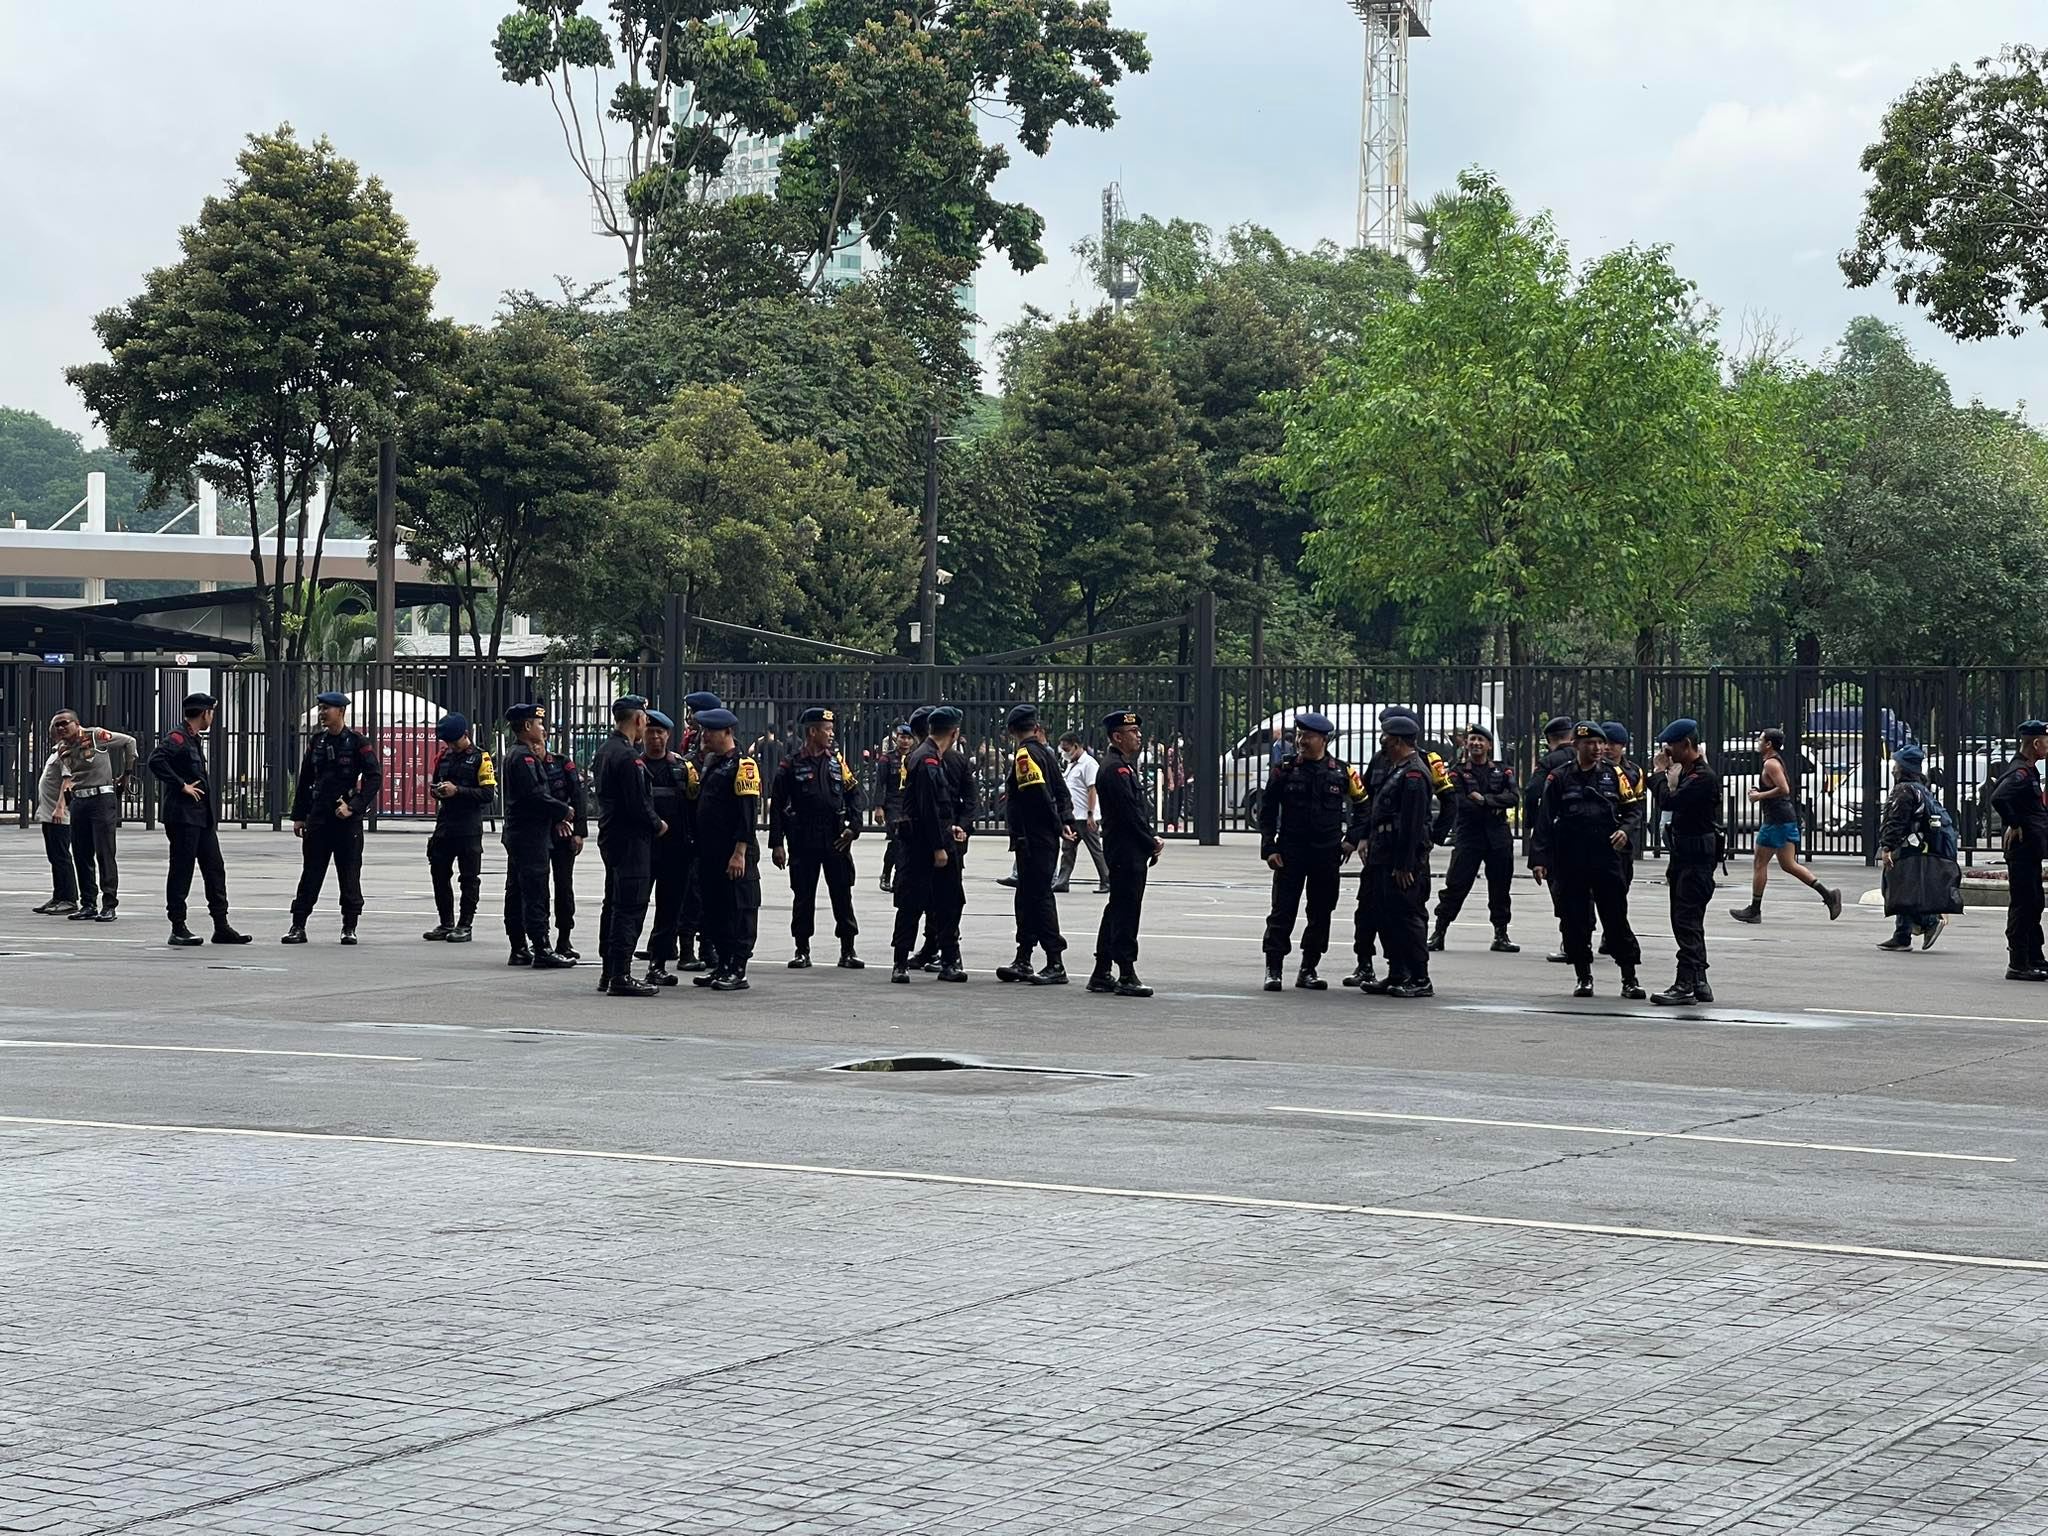 Được biết, sẽ có khoảng 1 vạn nhân viên an ninh bao gồm cả quân đội, trong đó có 3.500 cảnh sát (giao thông, phòng cháy, phòng nổ) và lực lượng chống báo động sẽ được huy động để đảm bảo an ninh, an toàn cho trận đấu giữa Indonesia và Việt Nam chiều ngày 6/1